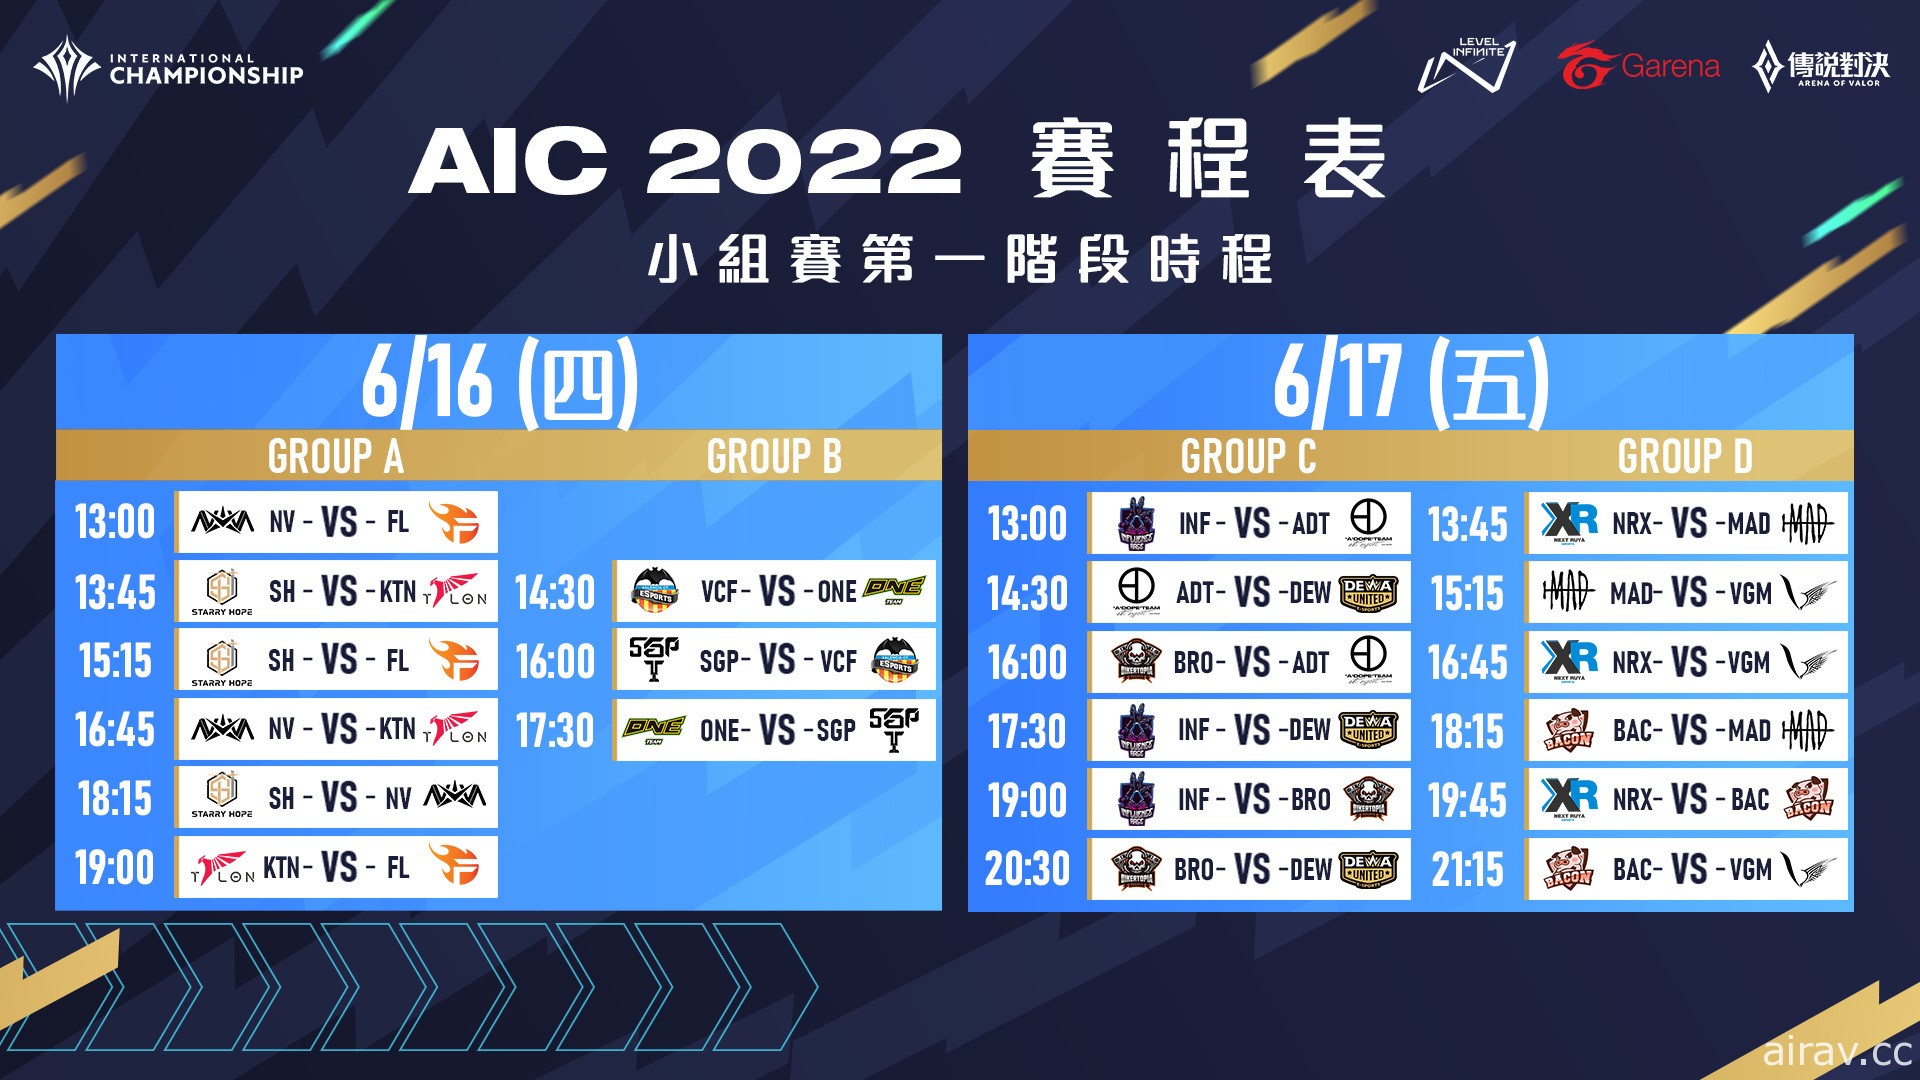 《Garena 传说对决》AIC 2022 国际锦标赛将于 6 月 16 日开战